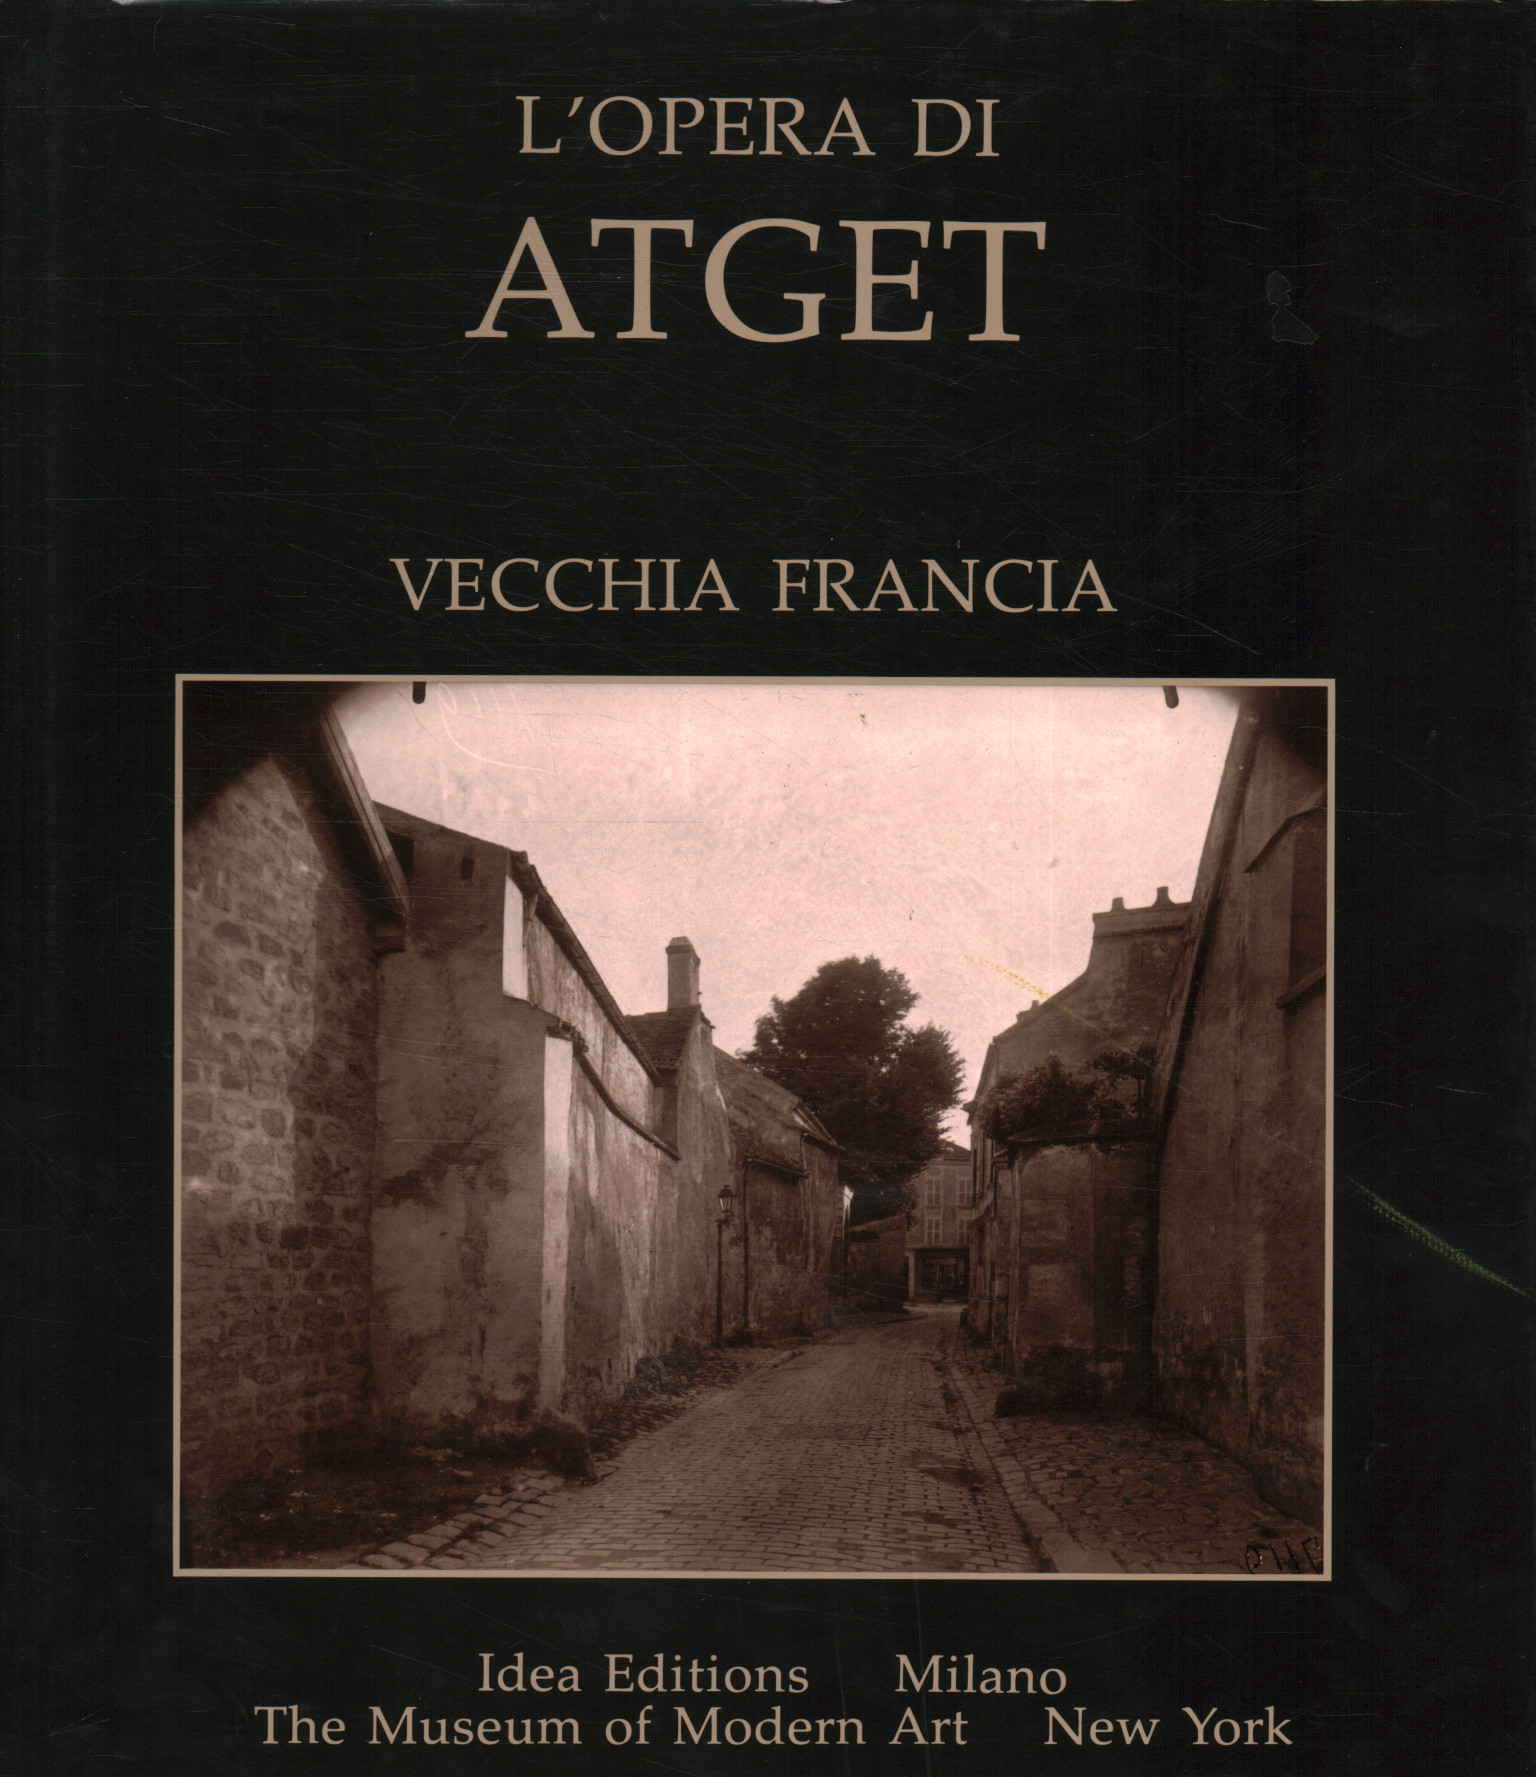 El trabajo de Atget. franco antiguo